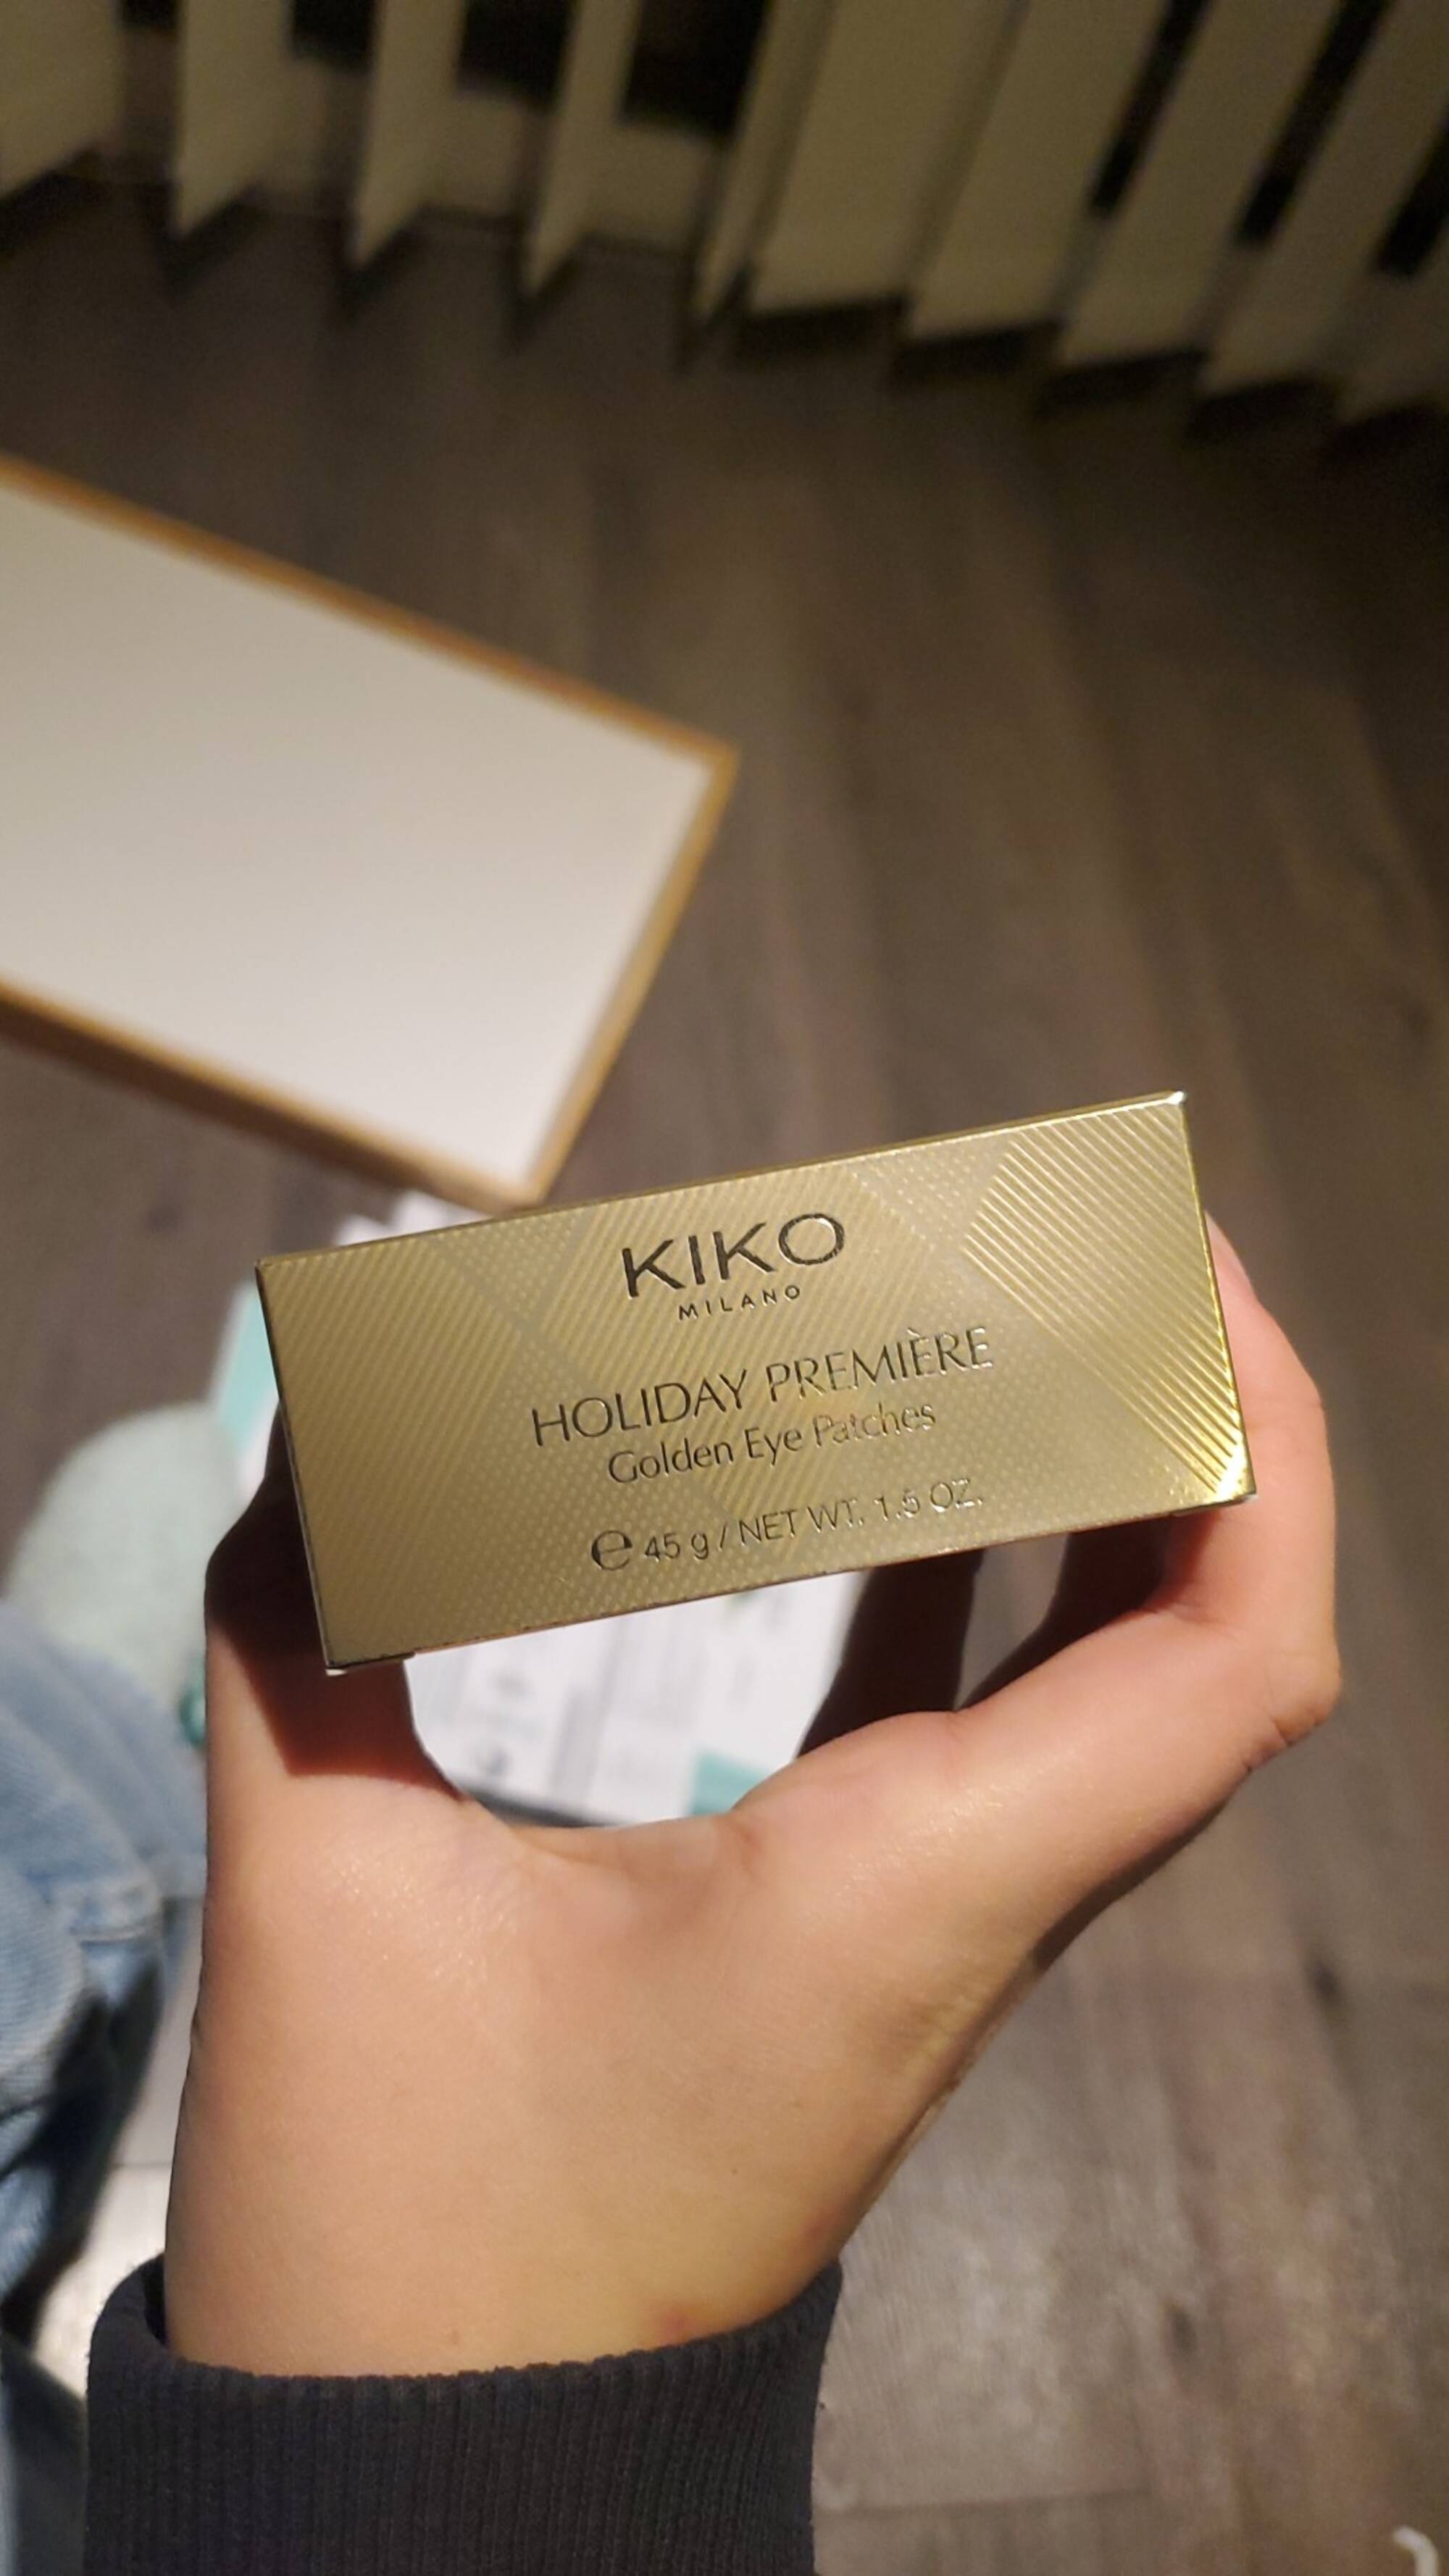 KIKO - Holiday première - Golden eye patches